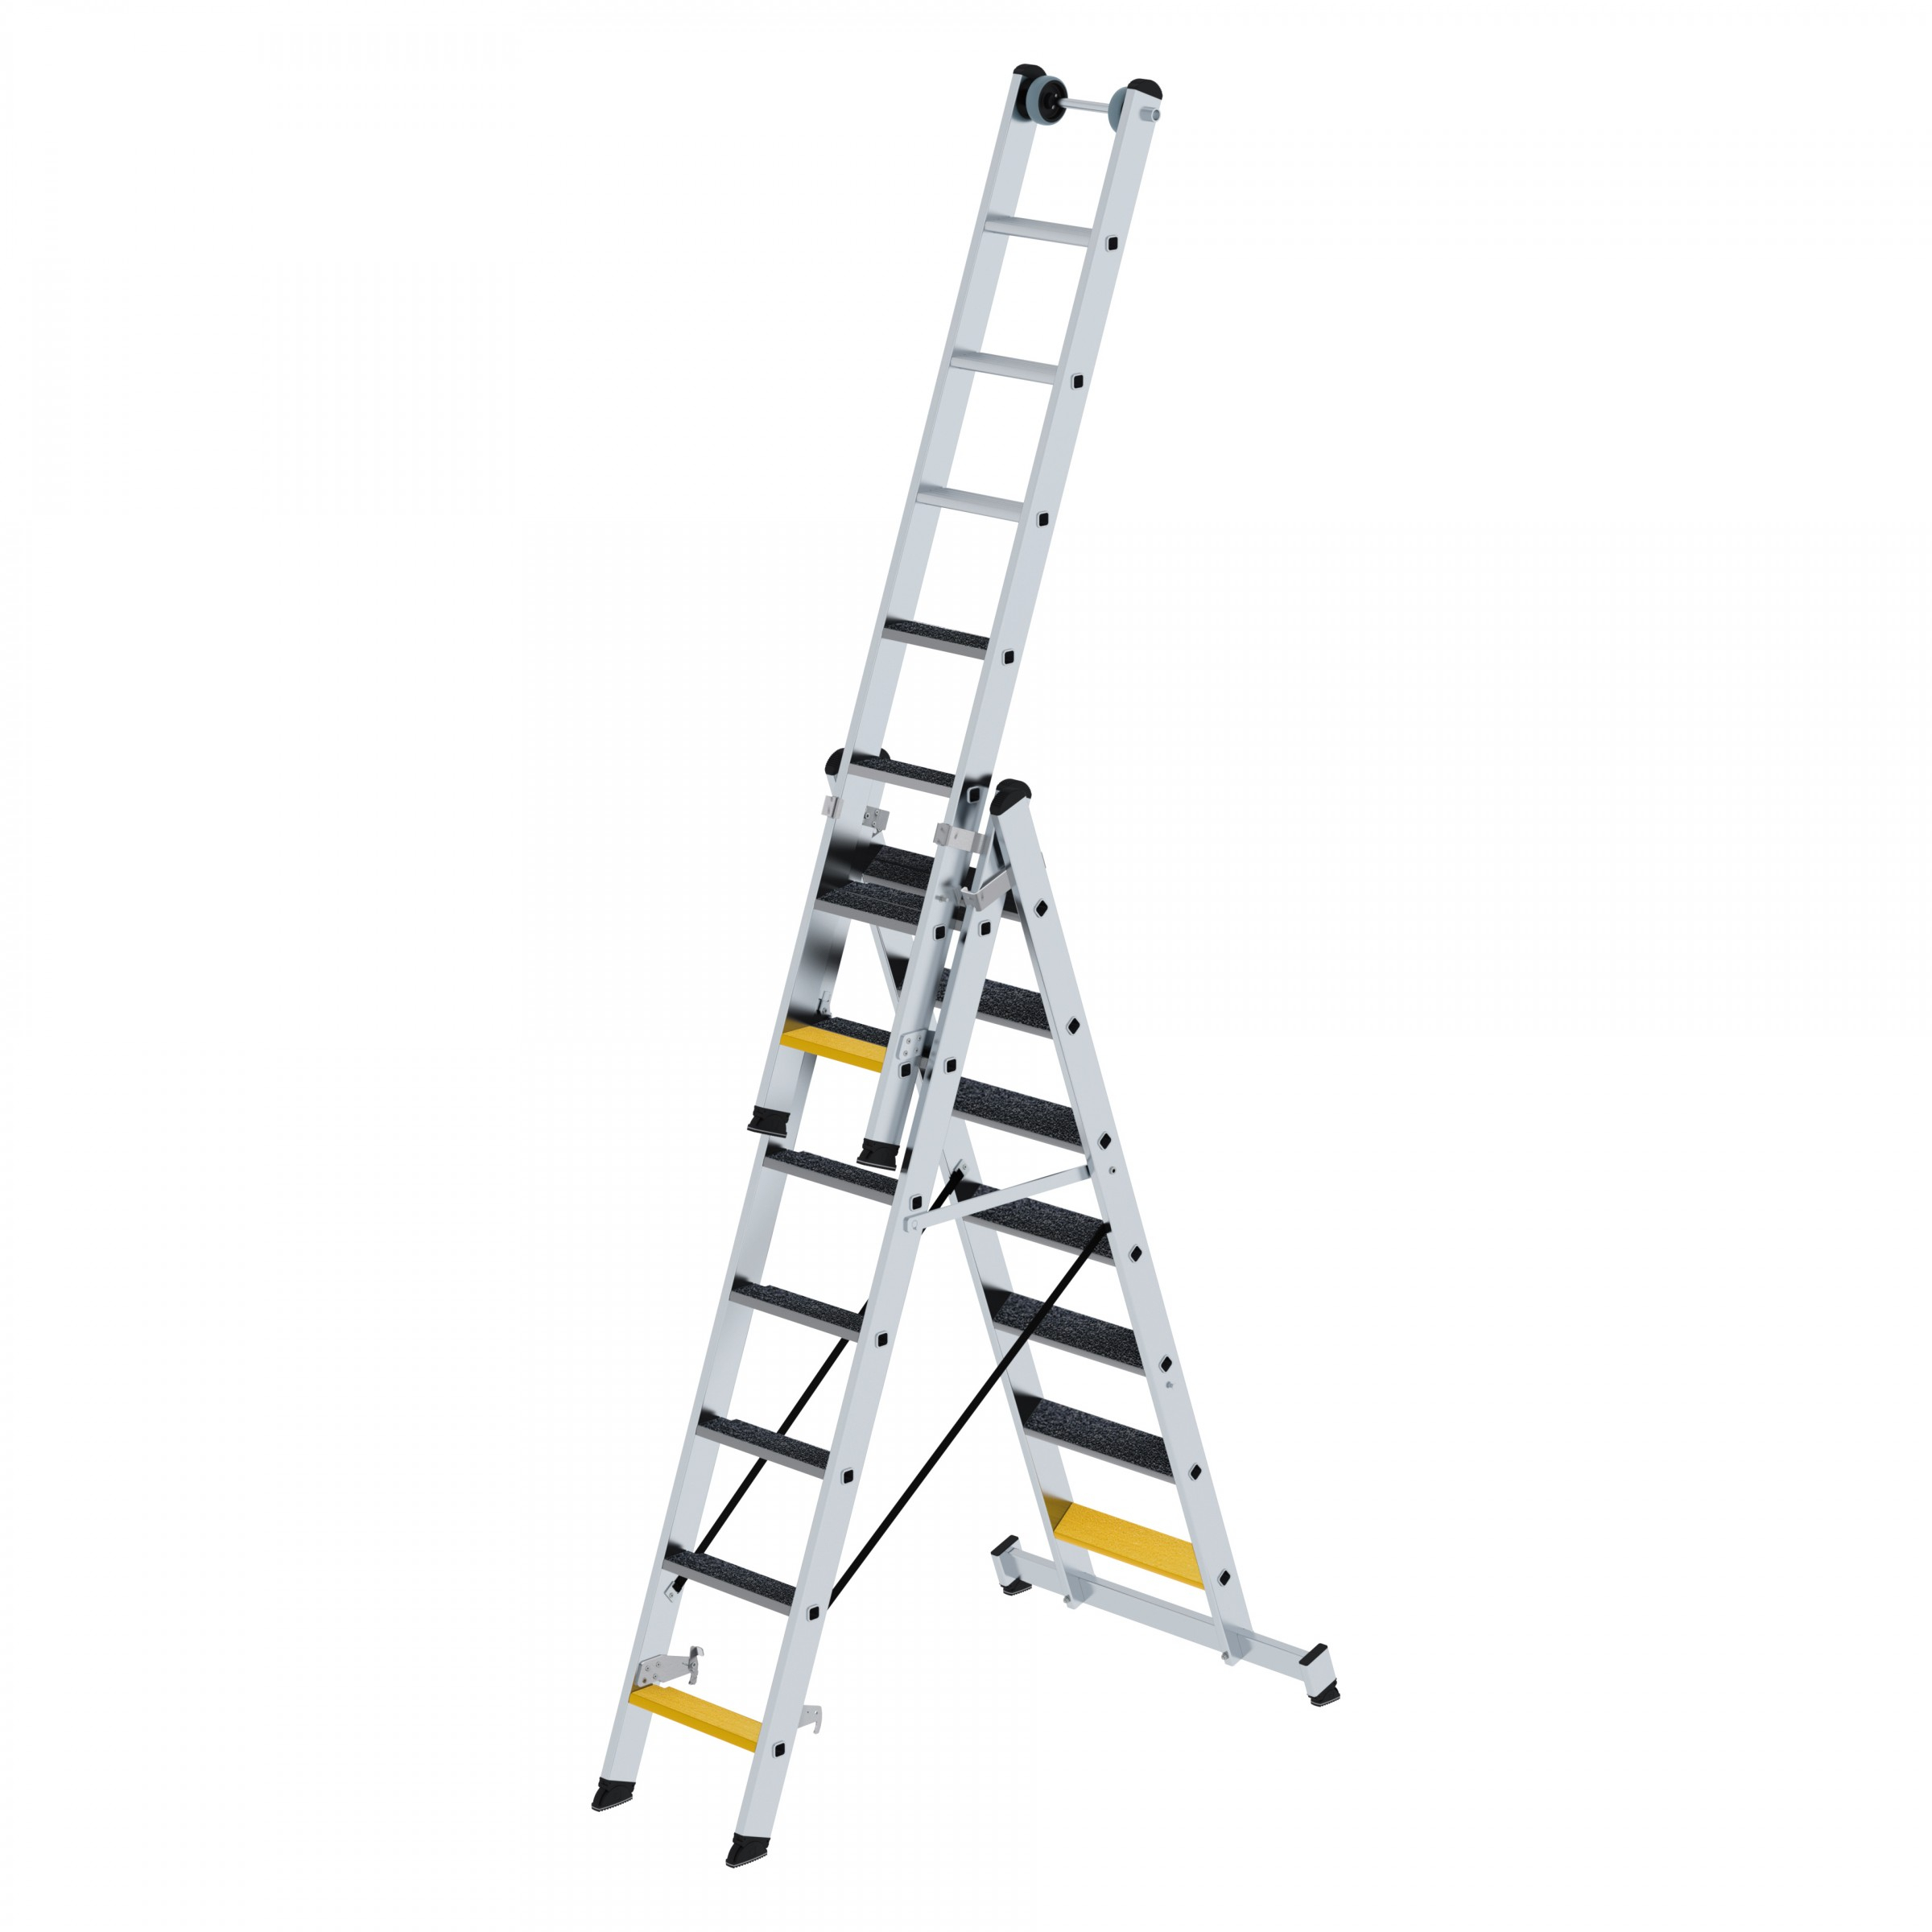 Stufen-Mehrzweckleiter 3-teilig mit nivello®-Traverse und clip-step R 13, 3x6 Stufen